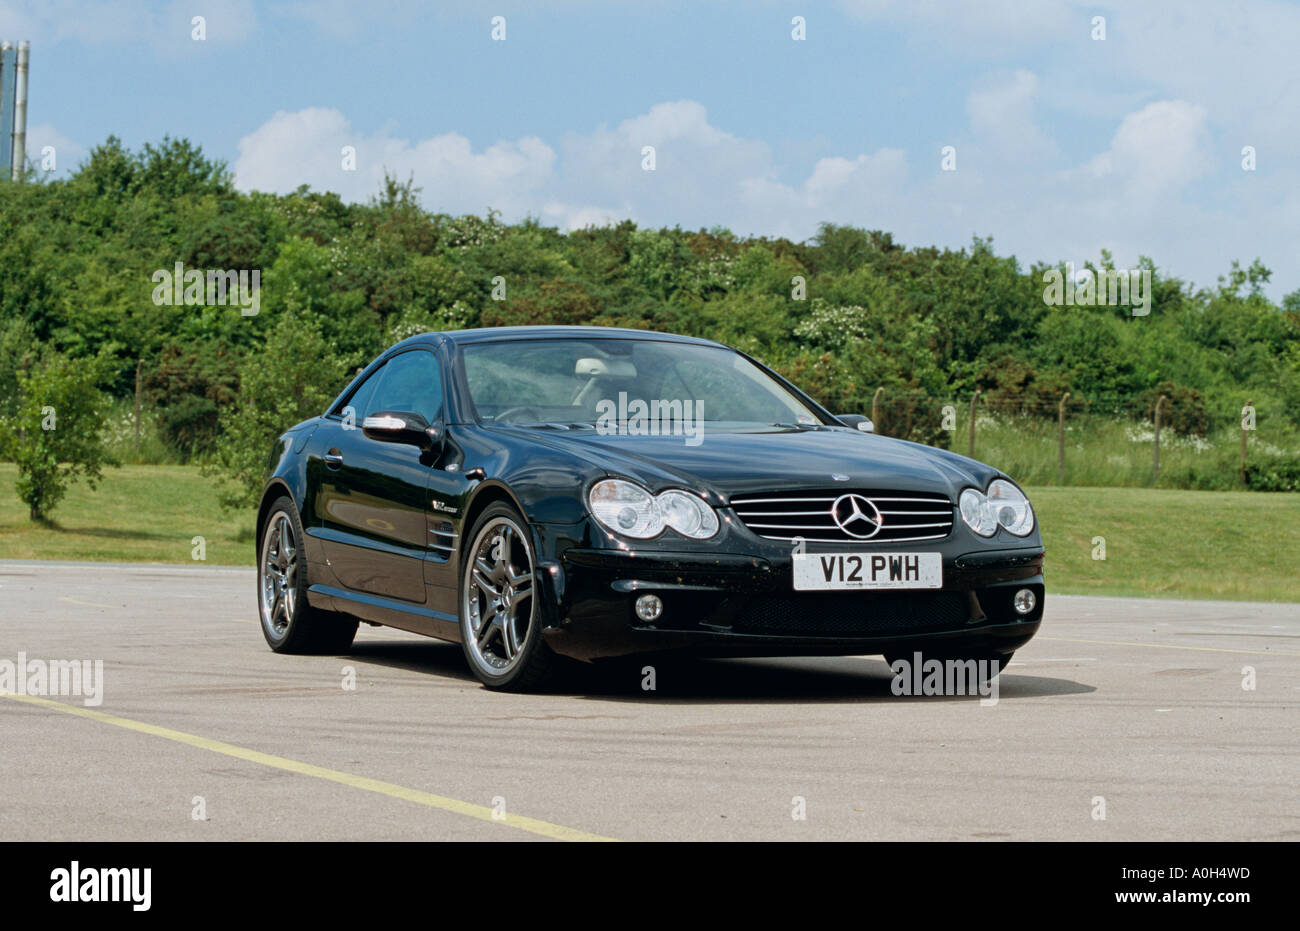 Mercedes Amg Convertible Stockfotos und -bilder Kaufen - Seite 2 - Alamy